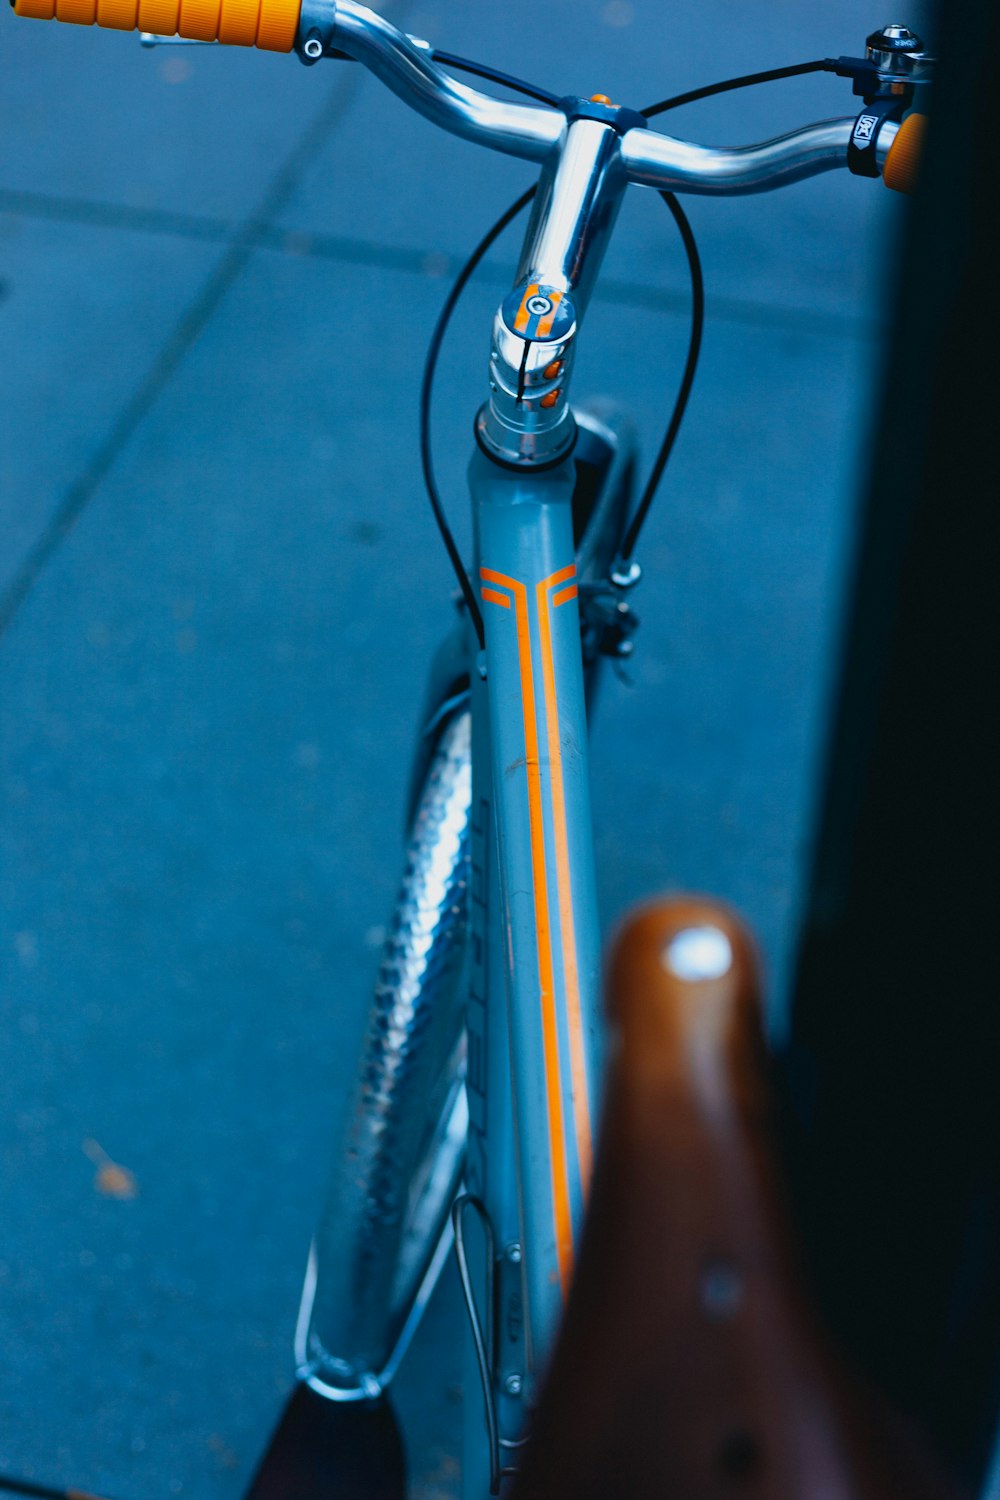 Fotografía de enfoque superficial del cuadro de bicicleta verde azulado